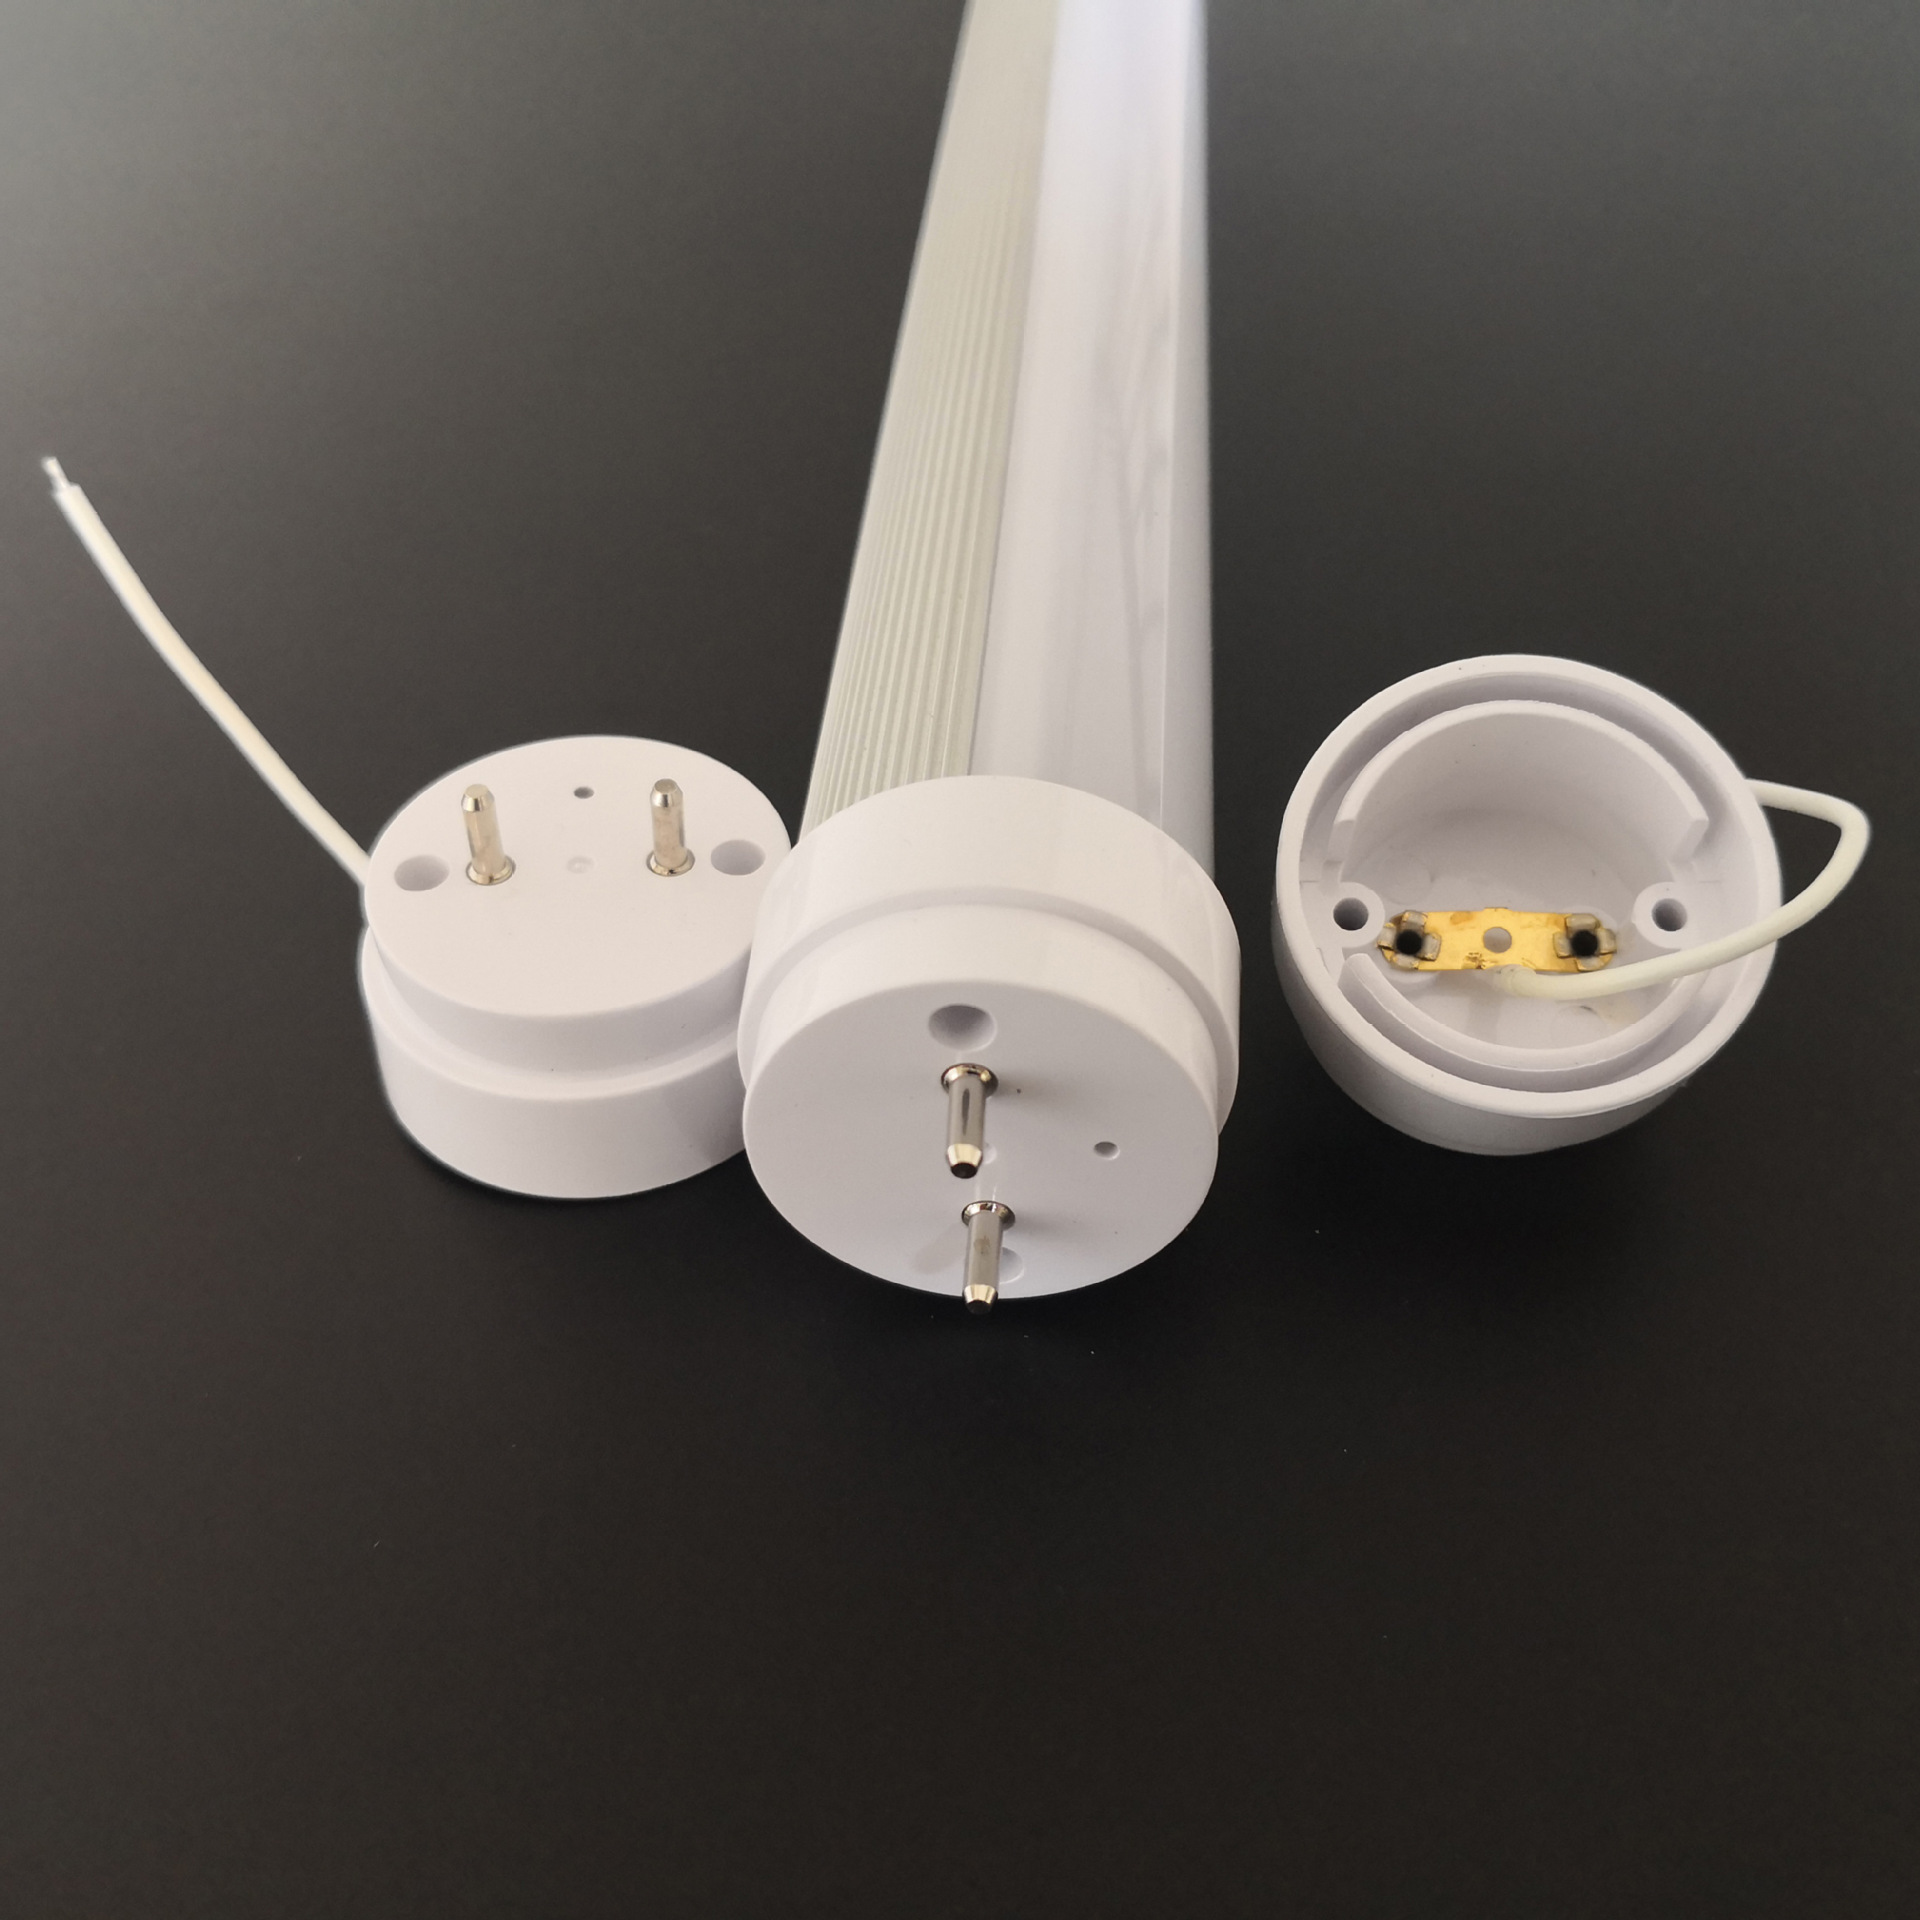 LED tube အိမ်ရာအတွက် ကုန်ကြမ်းပစ္စည်းများ၏ ပုံသဏ္ဍာန်နှင့် မီးဘေးကာကွယ်ရေးလိုအပ်ချက်များ